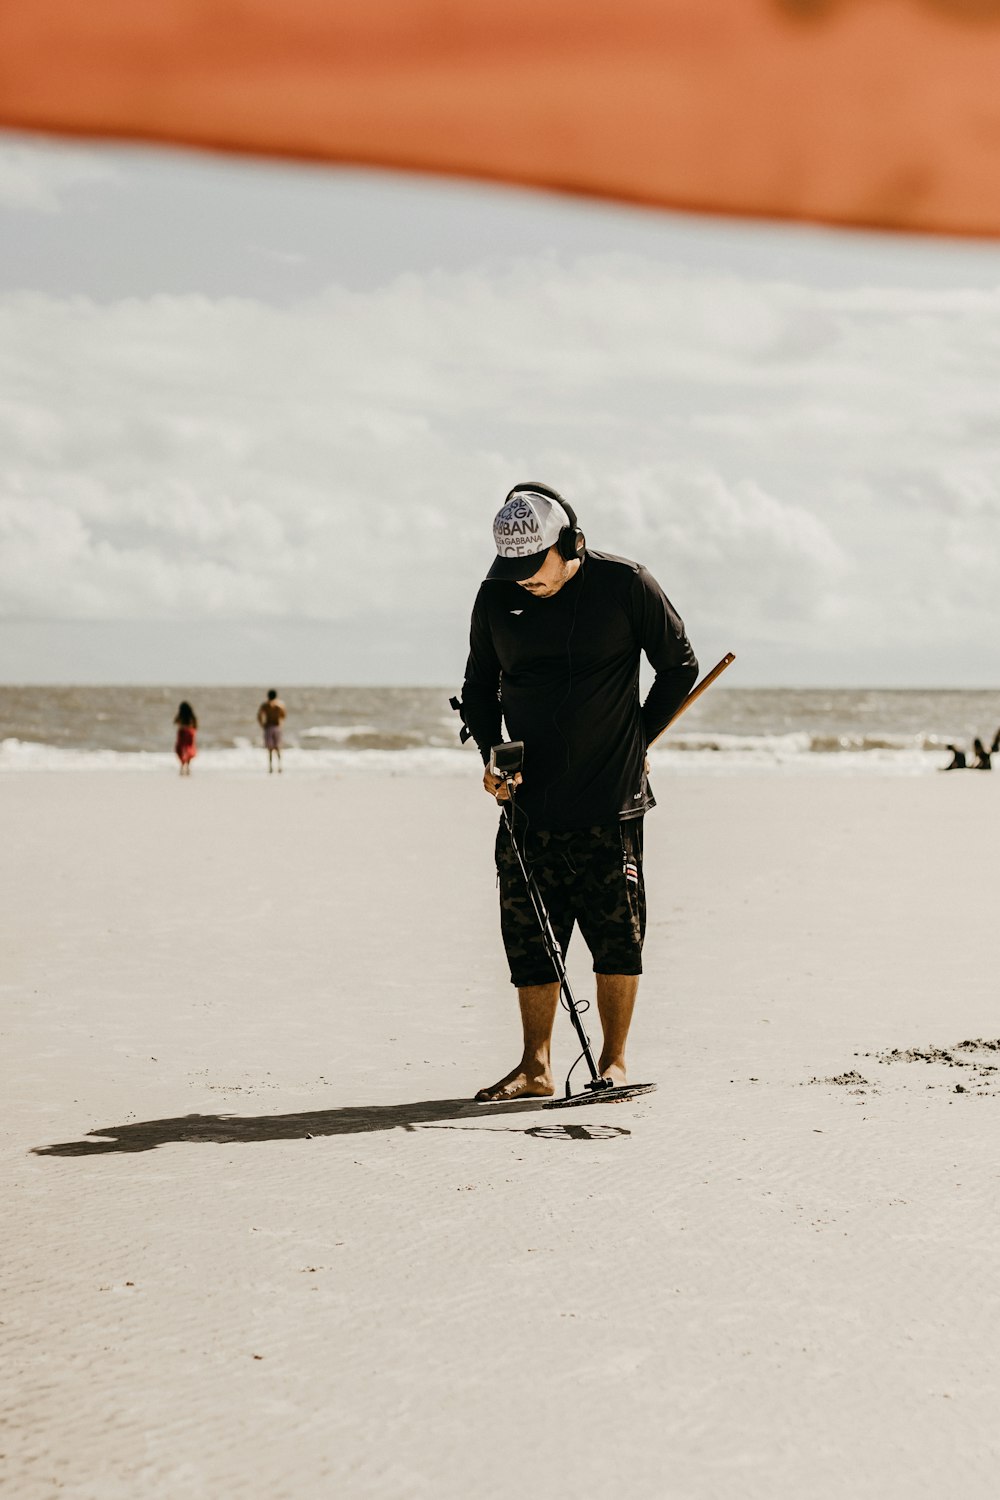 a man standing on a beach holding a baseball bat